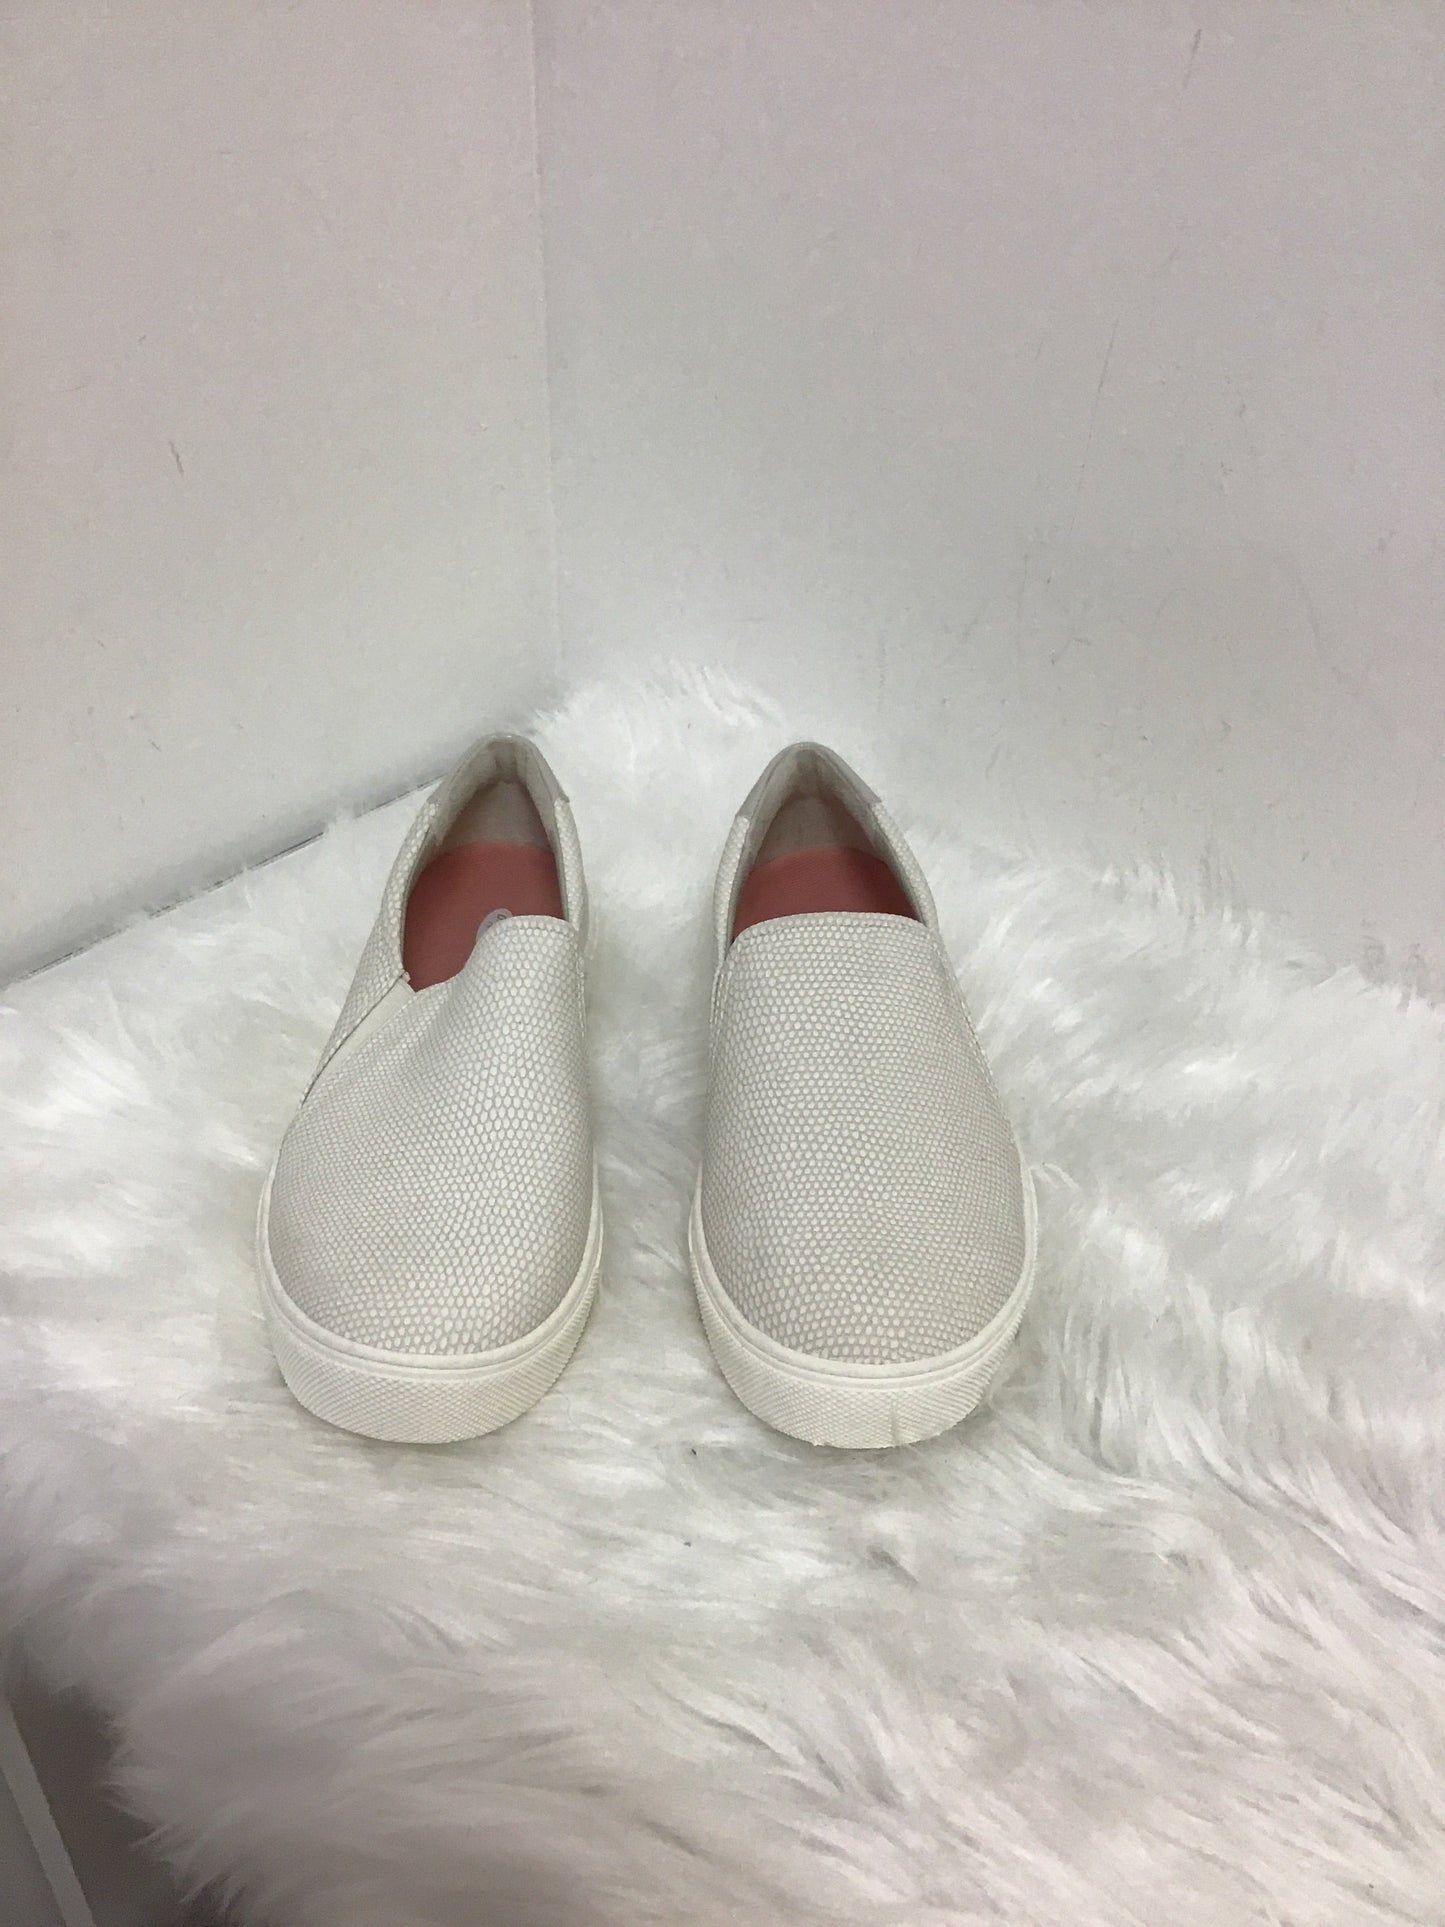 White Shoes Flats Dr Scholls, Size 8.5